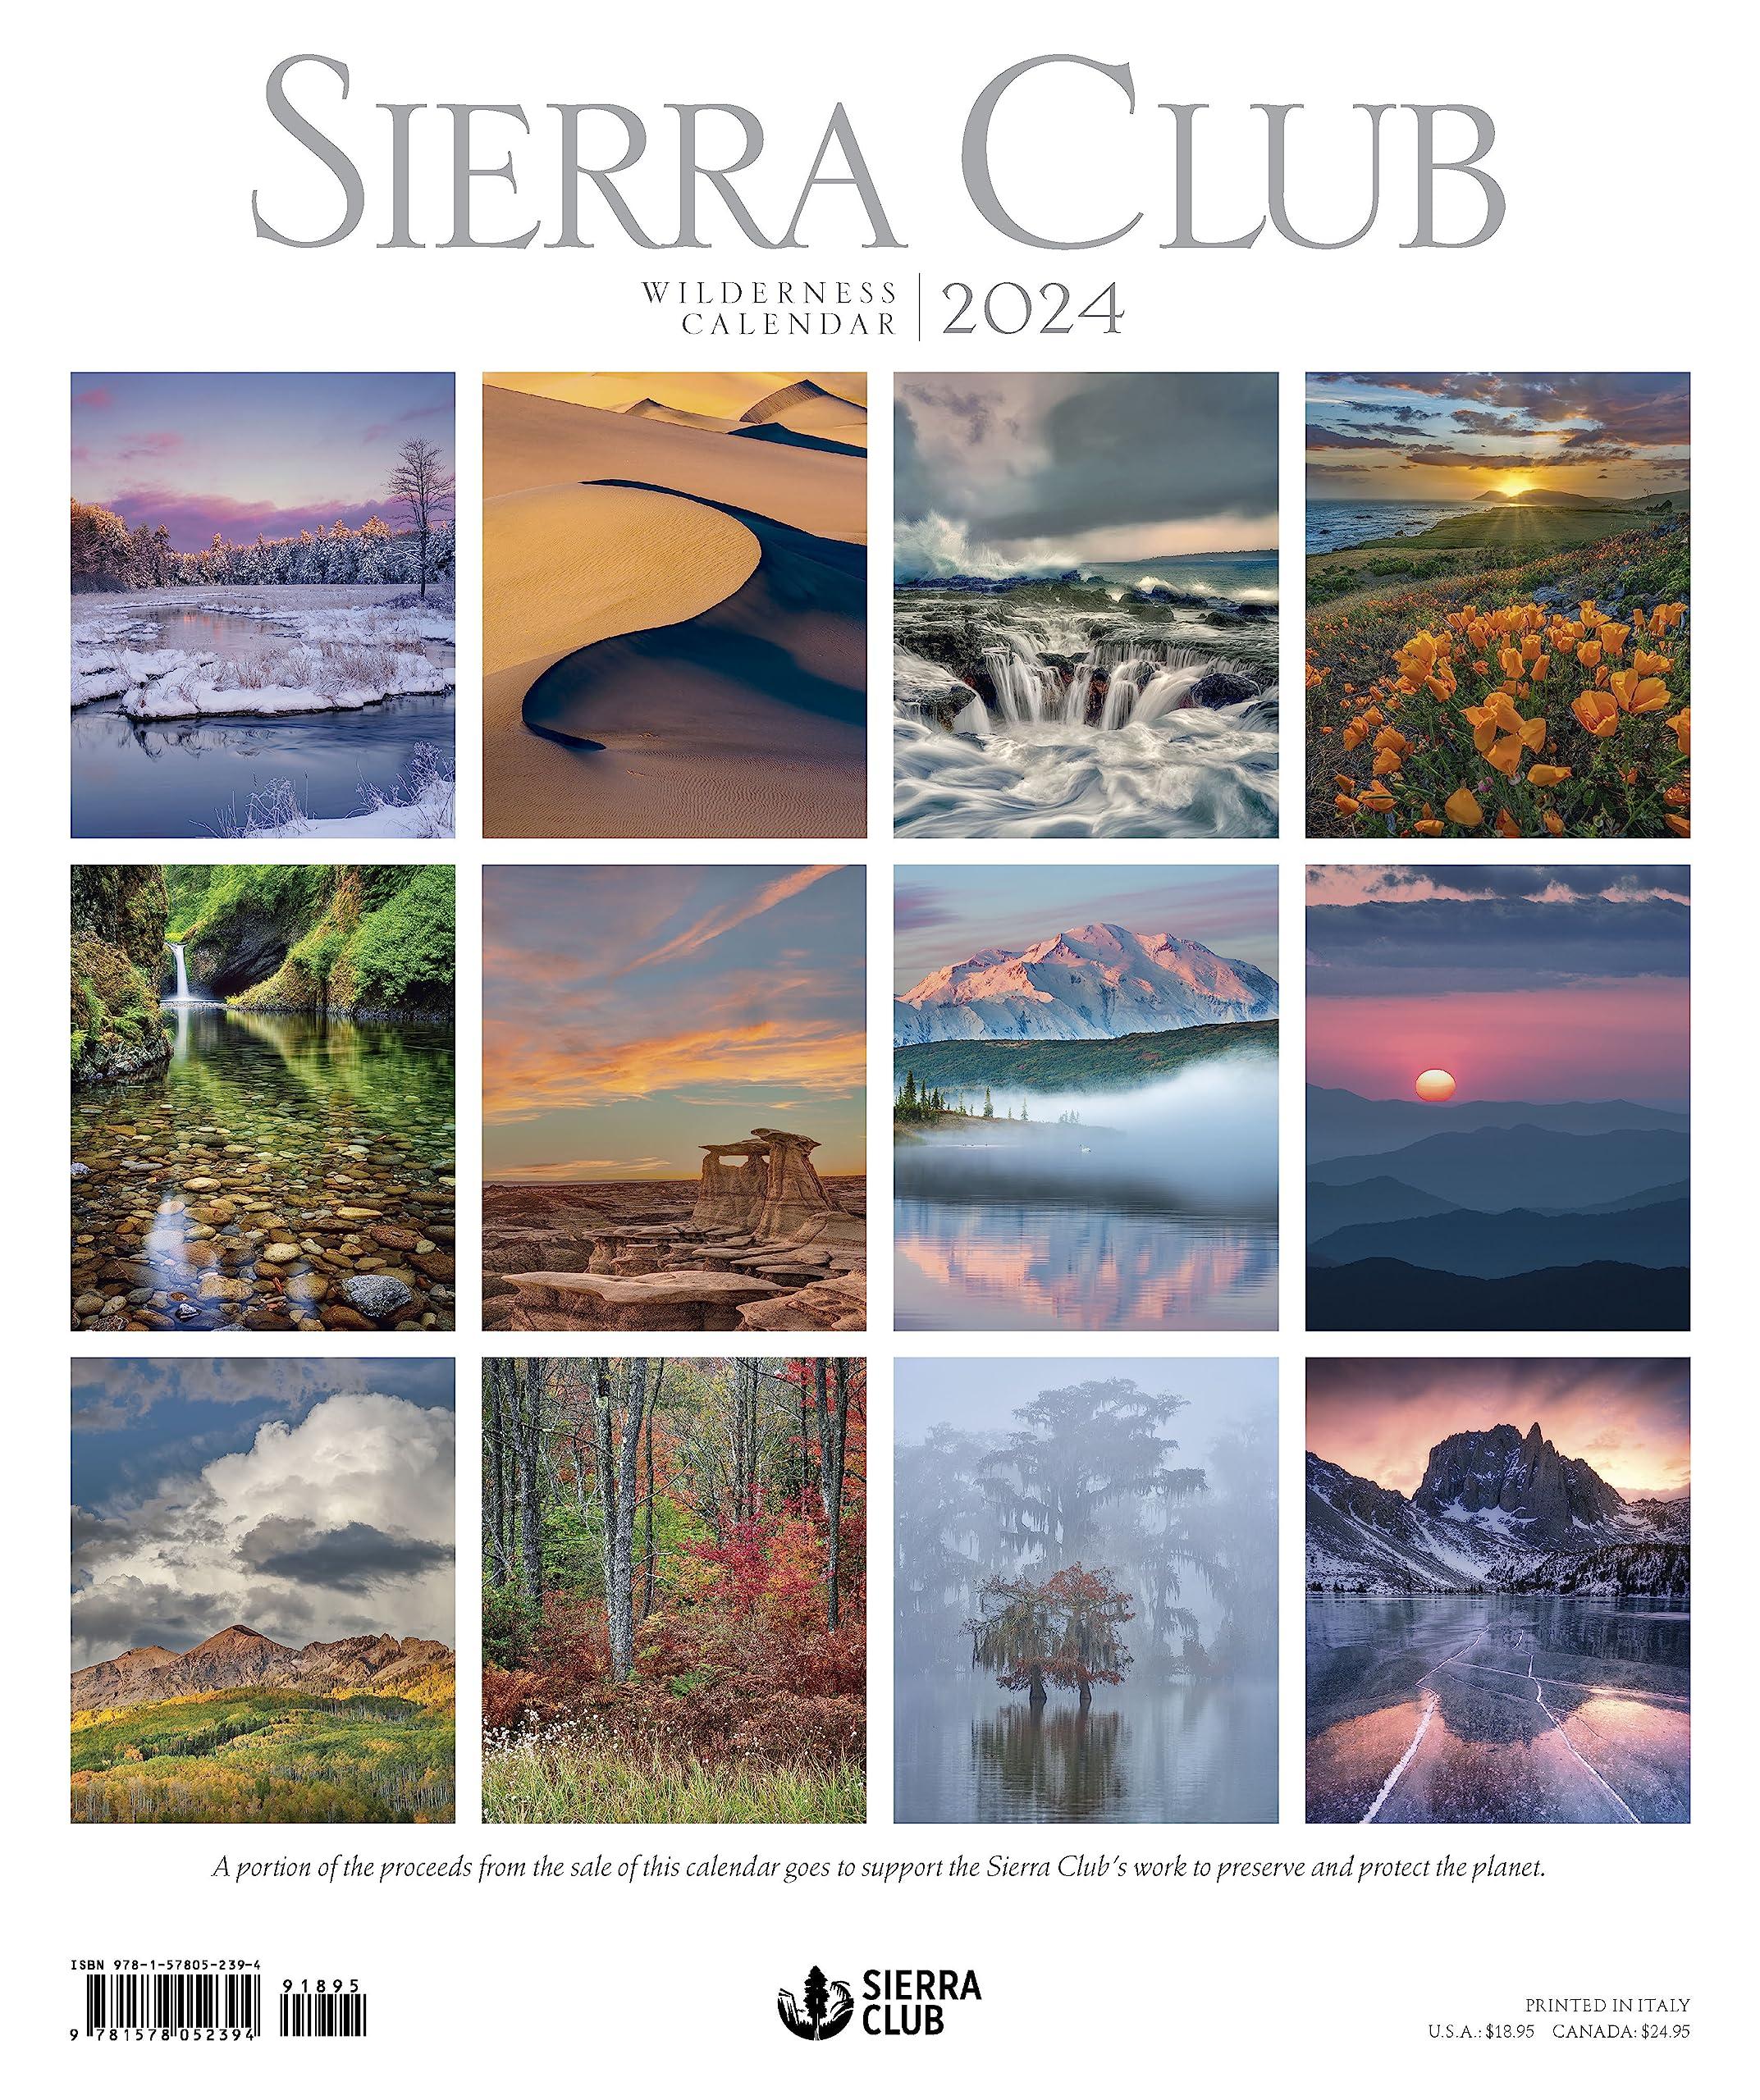 Sierra Club Wilderness 2024 Wall Calendar - Calendars.com